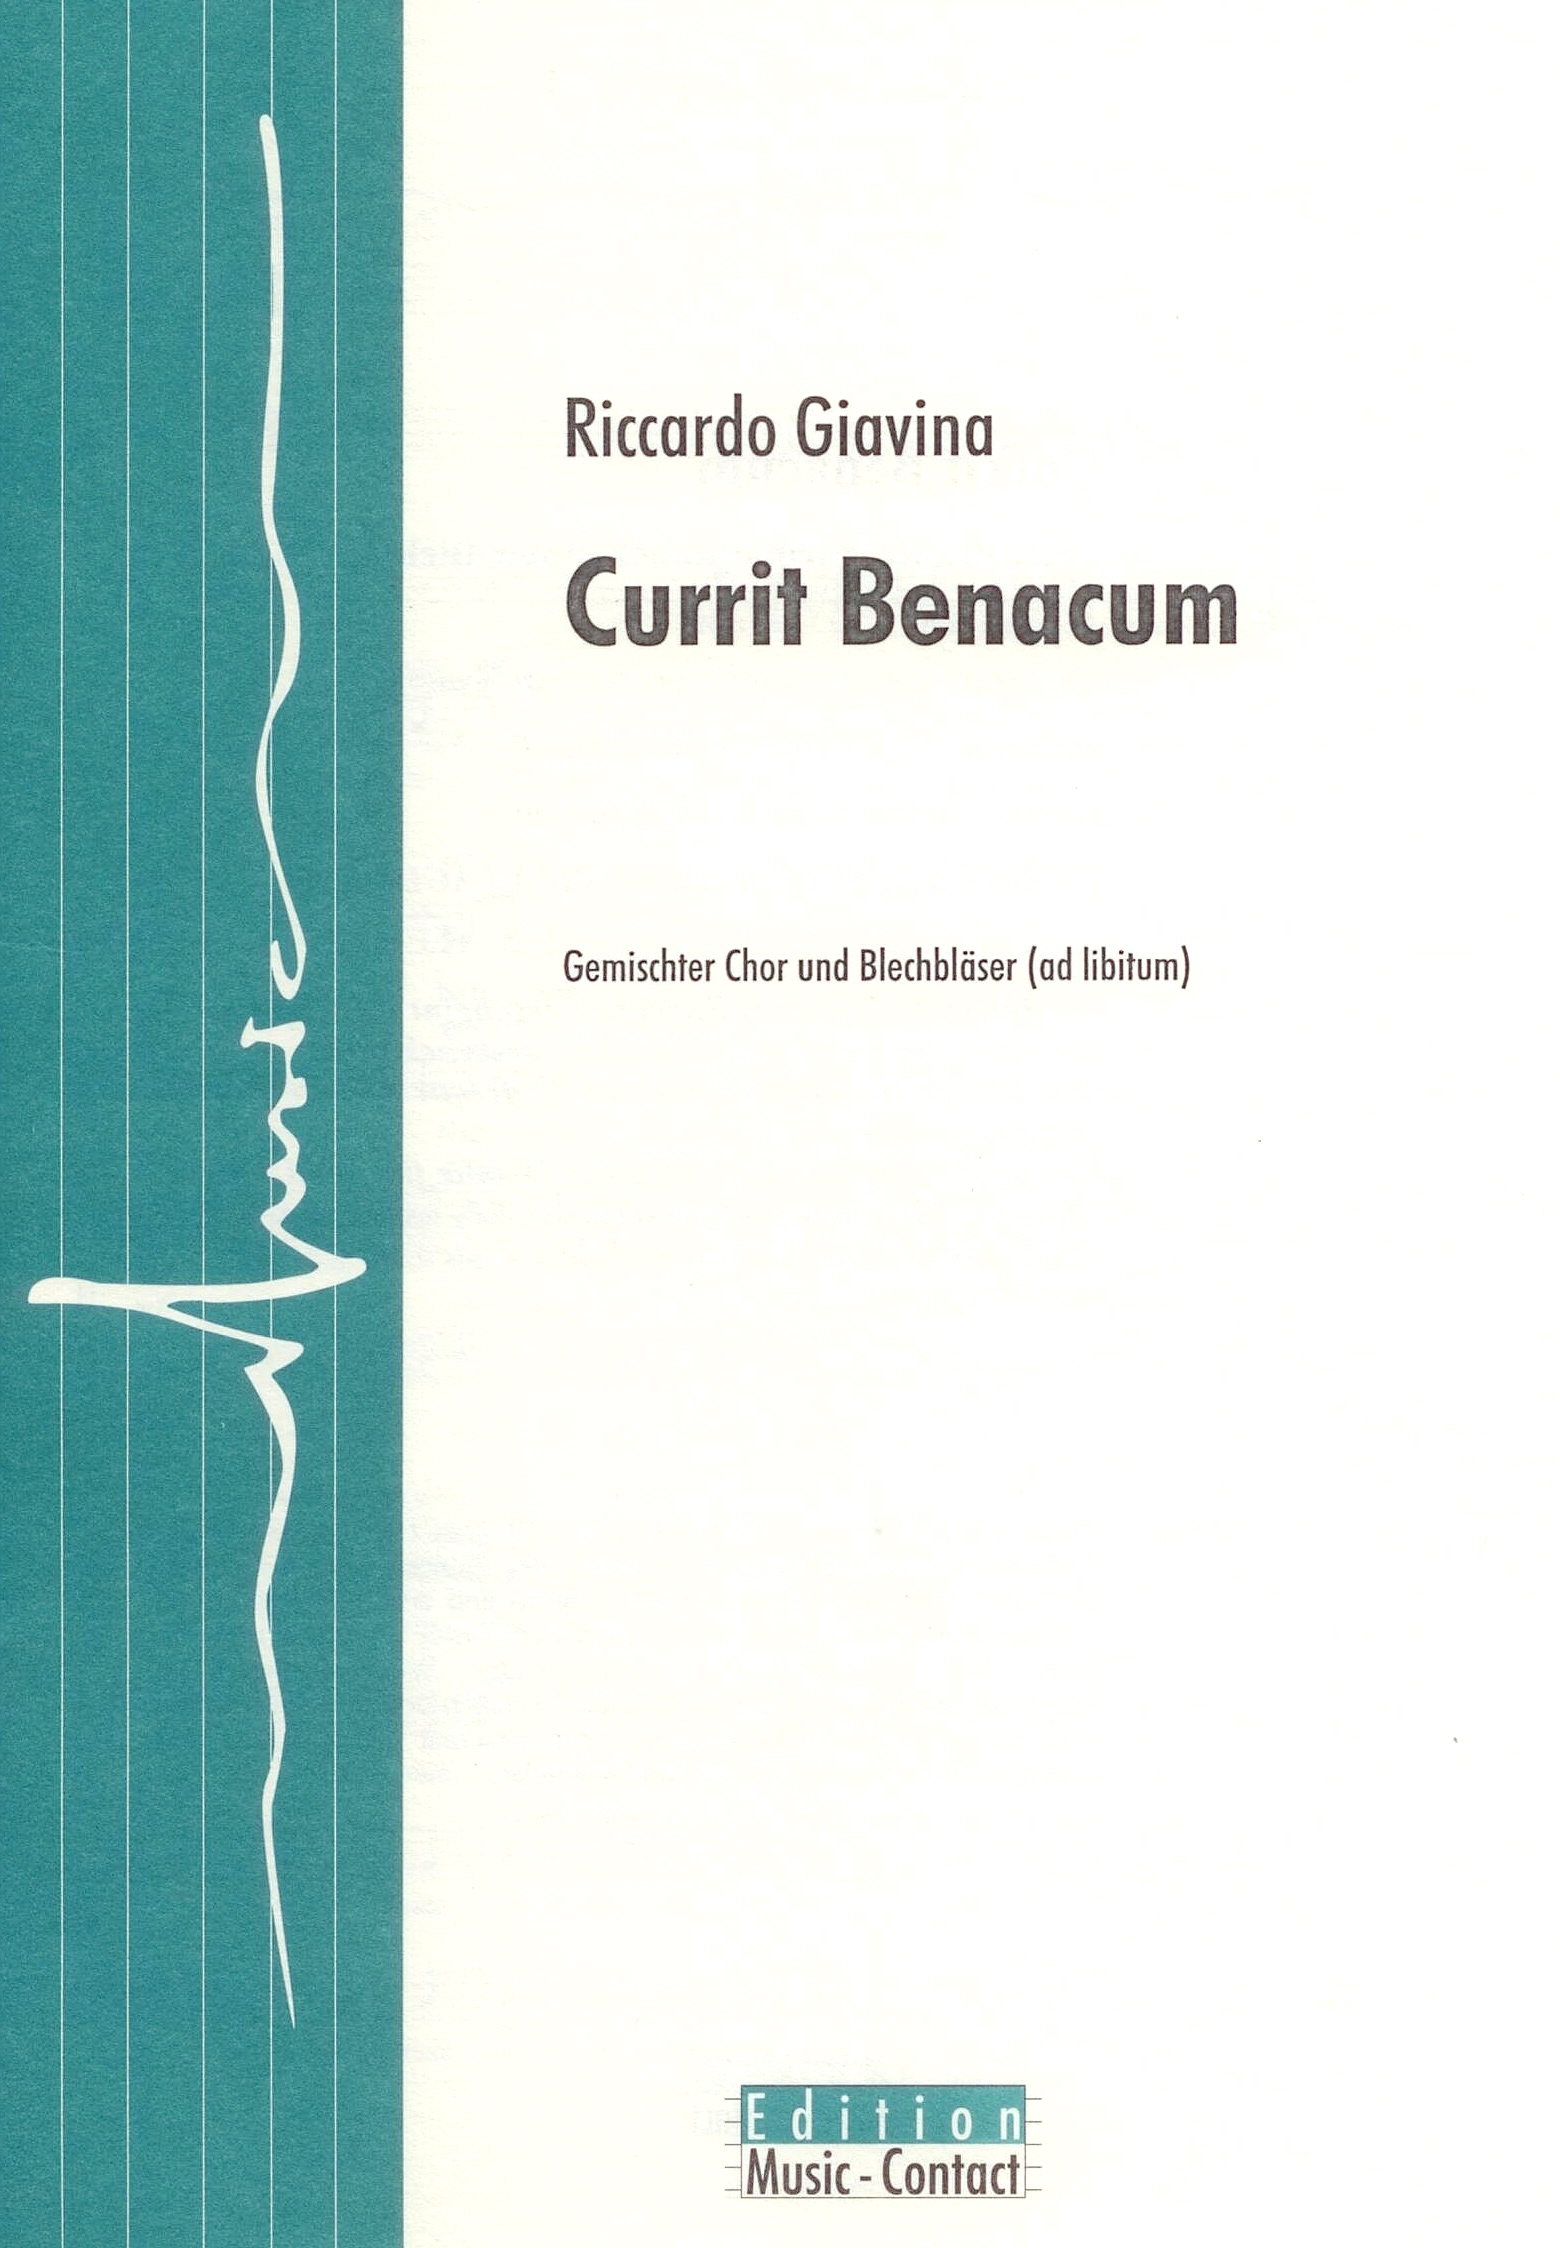 Currit Benacum - Show sample score